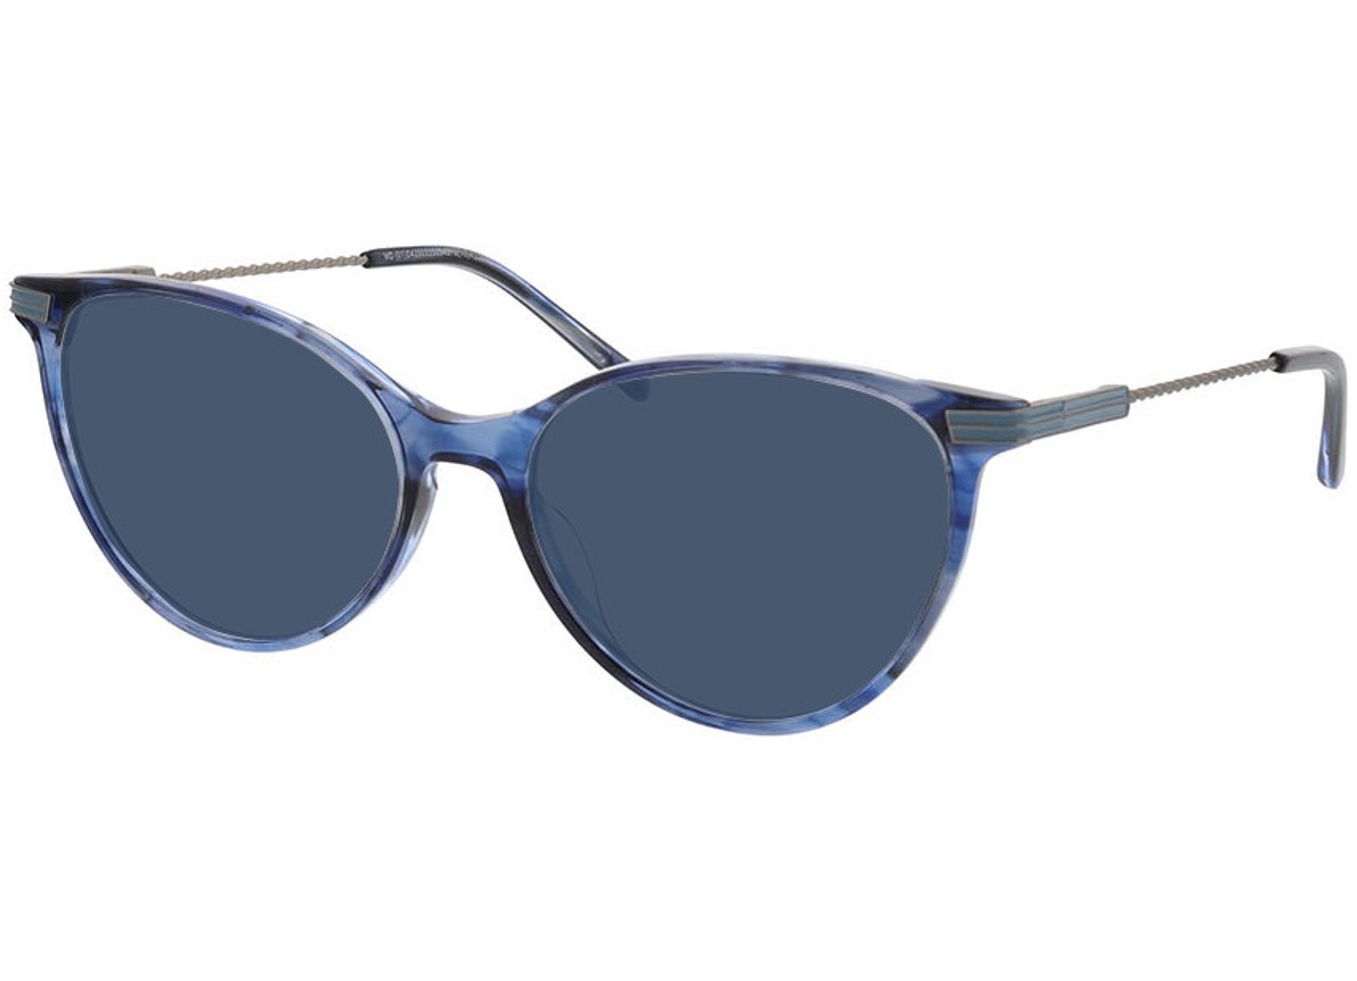 Leona - blau Sonnenbrille mit Sehstärke, Vollrand, Cateye von Brille24 Collection